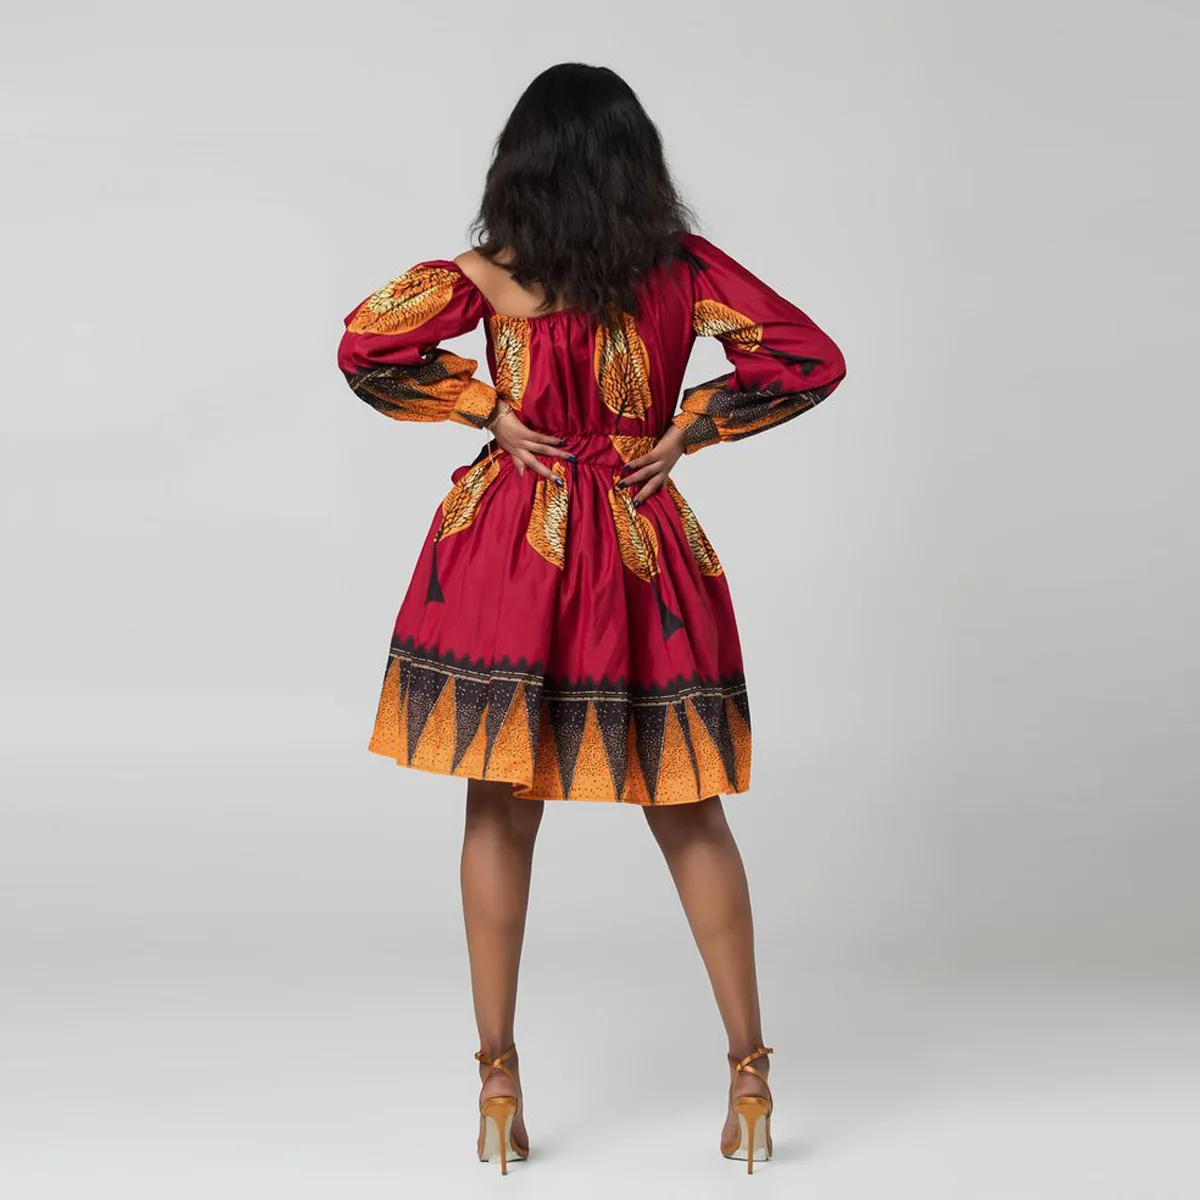 Африканские милые платья для женщин Традиционная африканская одежда Дашики Анкара летнее Бандажное платье хиджаб печать африканская одежда